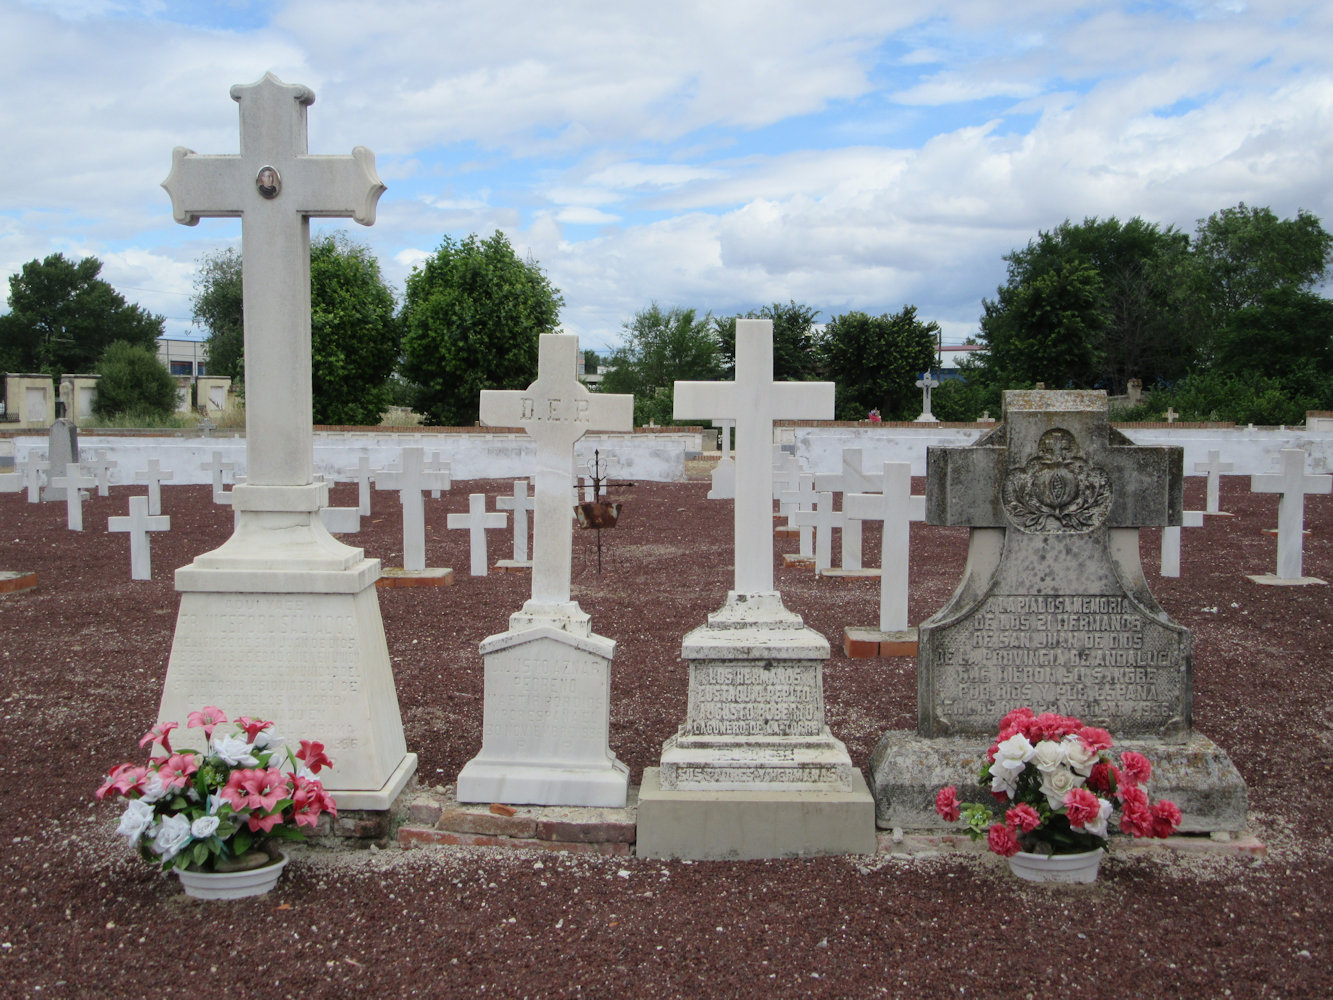 Grabstein für Nikephorus Salvador del Río (links) und Grabstein für 21 hier gestorbene Barmherzige Bruder vom heiligen Johannes von Gott aus der Ordenzprovinz Andalusien (rechts) auf dem Märtyrerfriedhof Paracuellos del Jamara